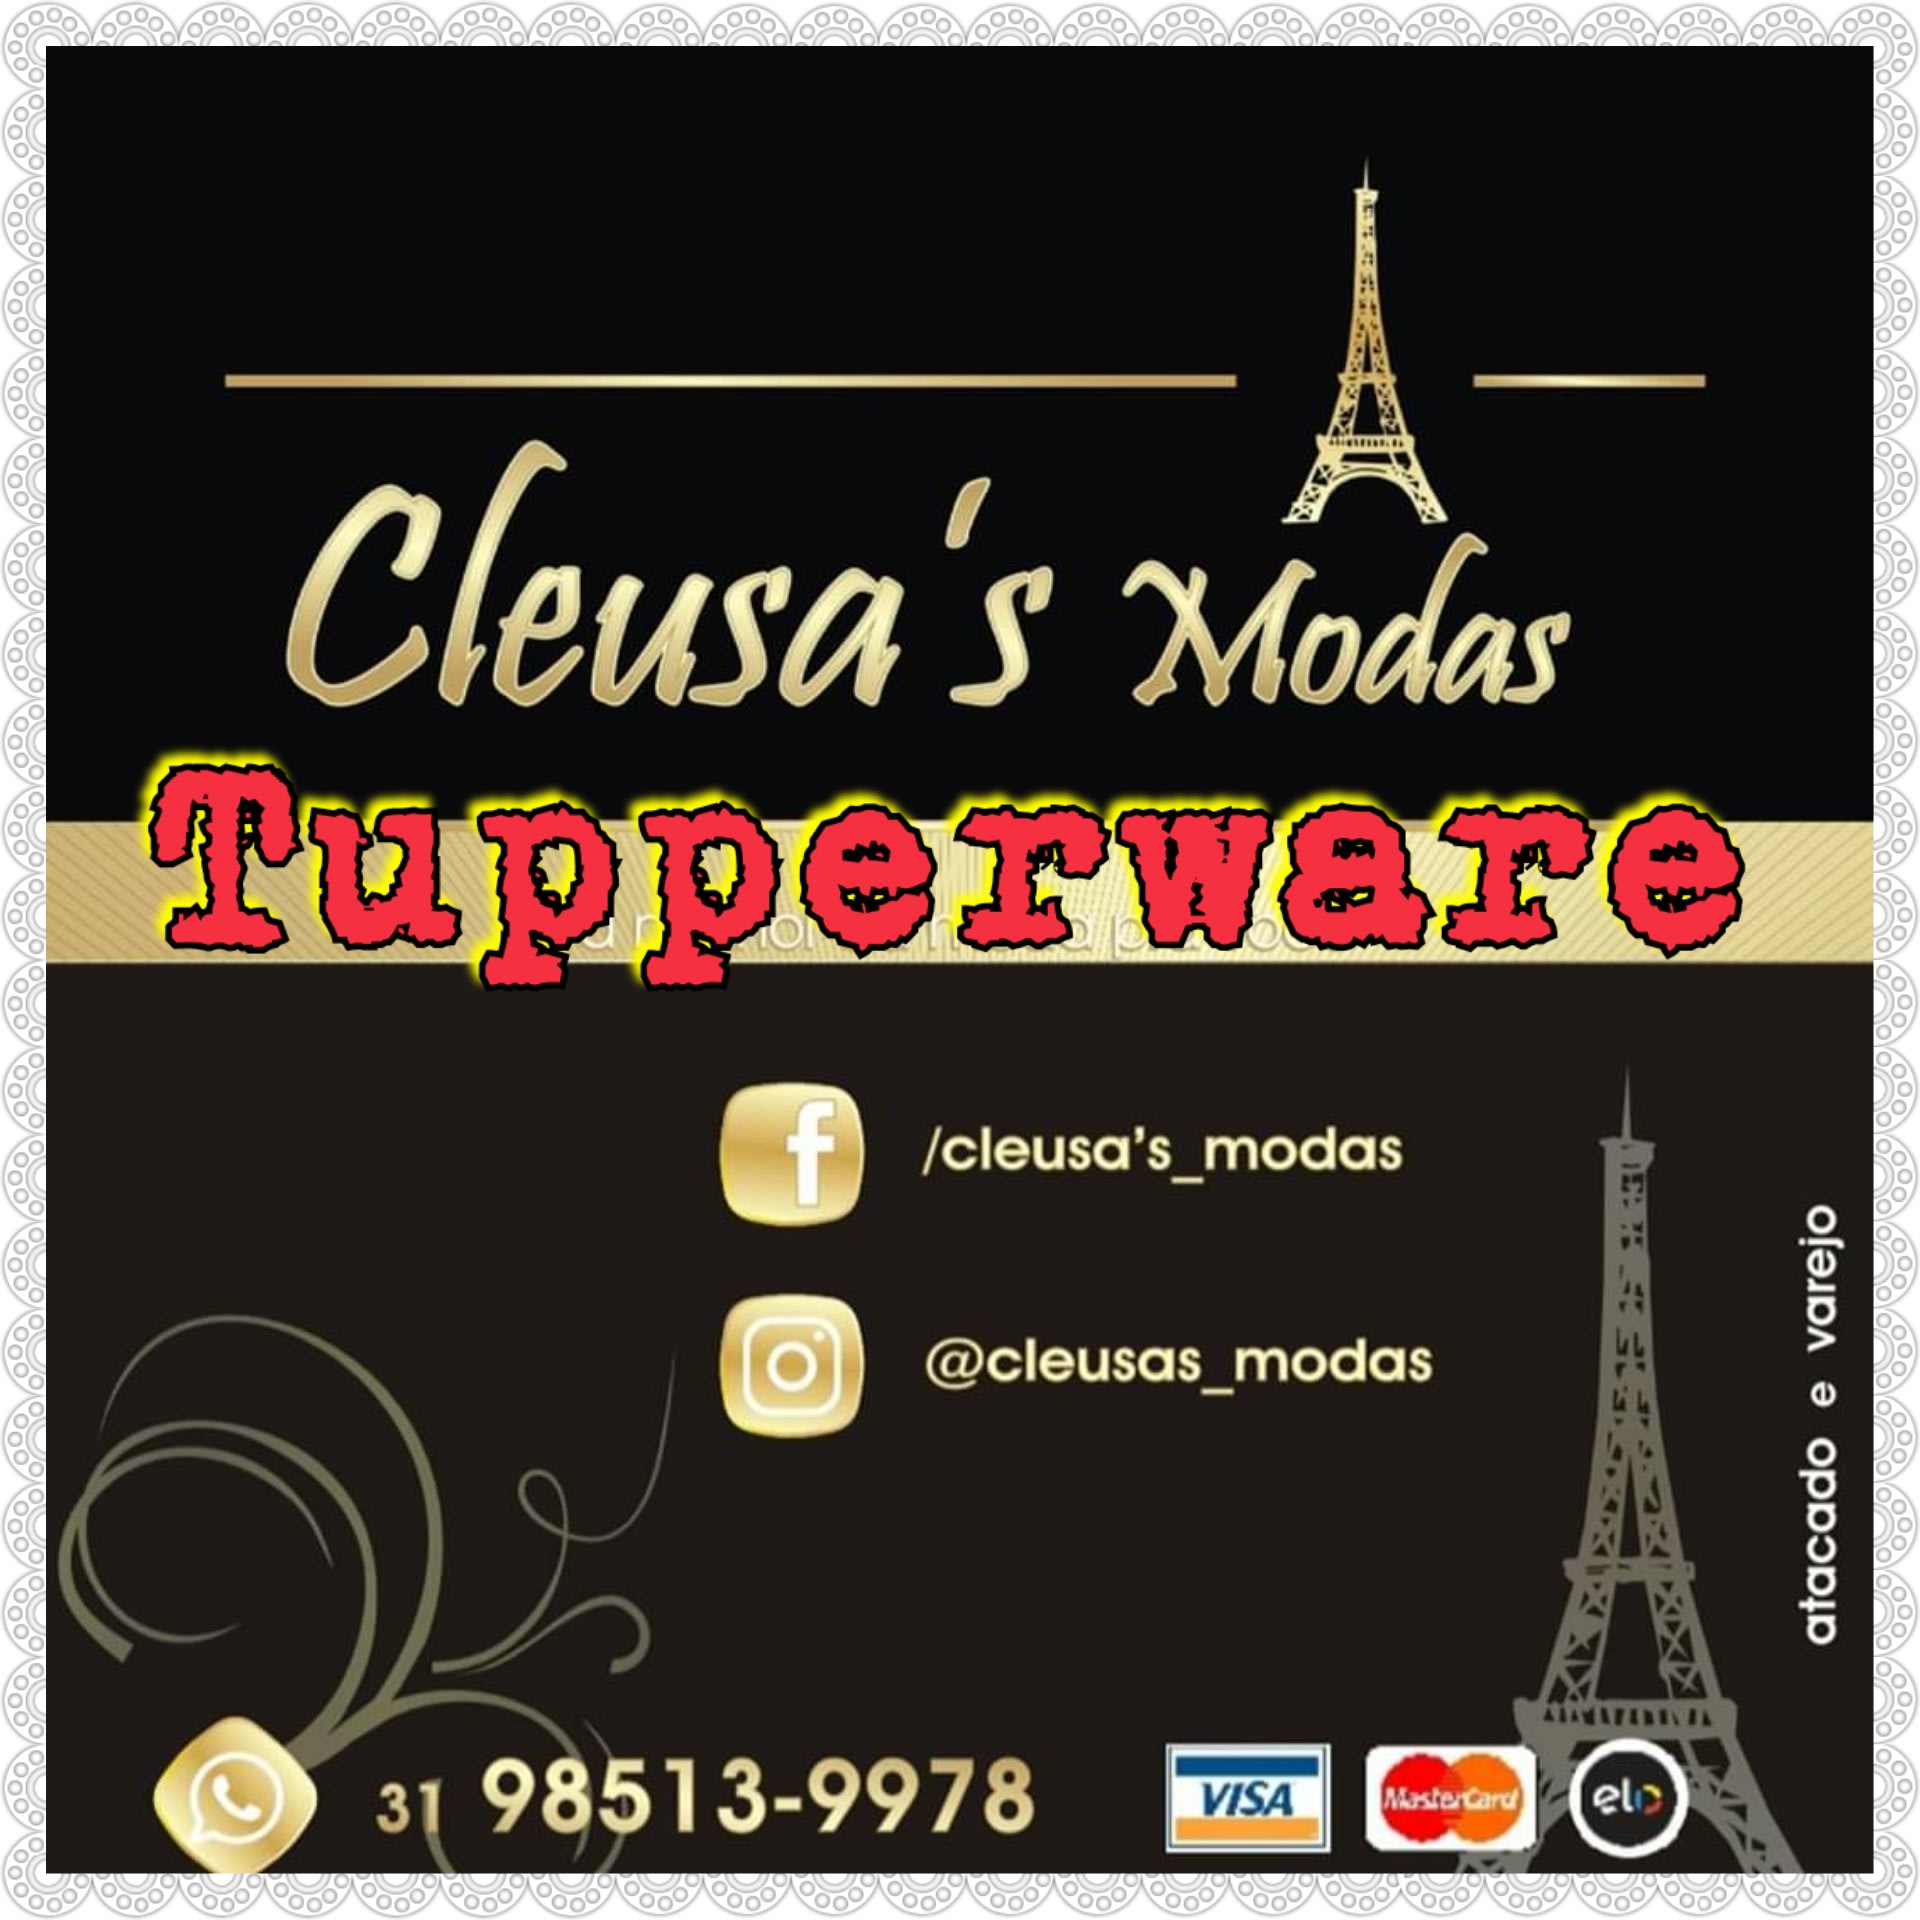 Cleusa's Modas Tupperware